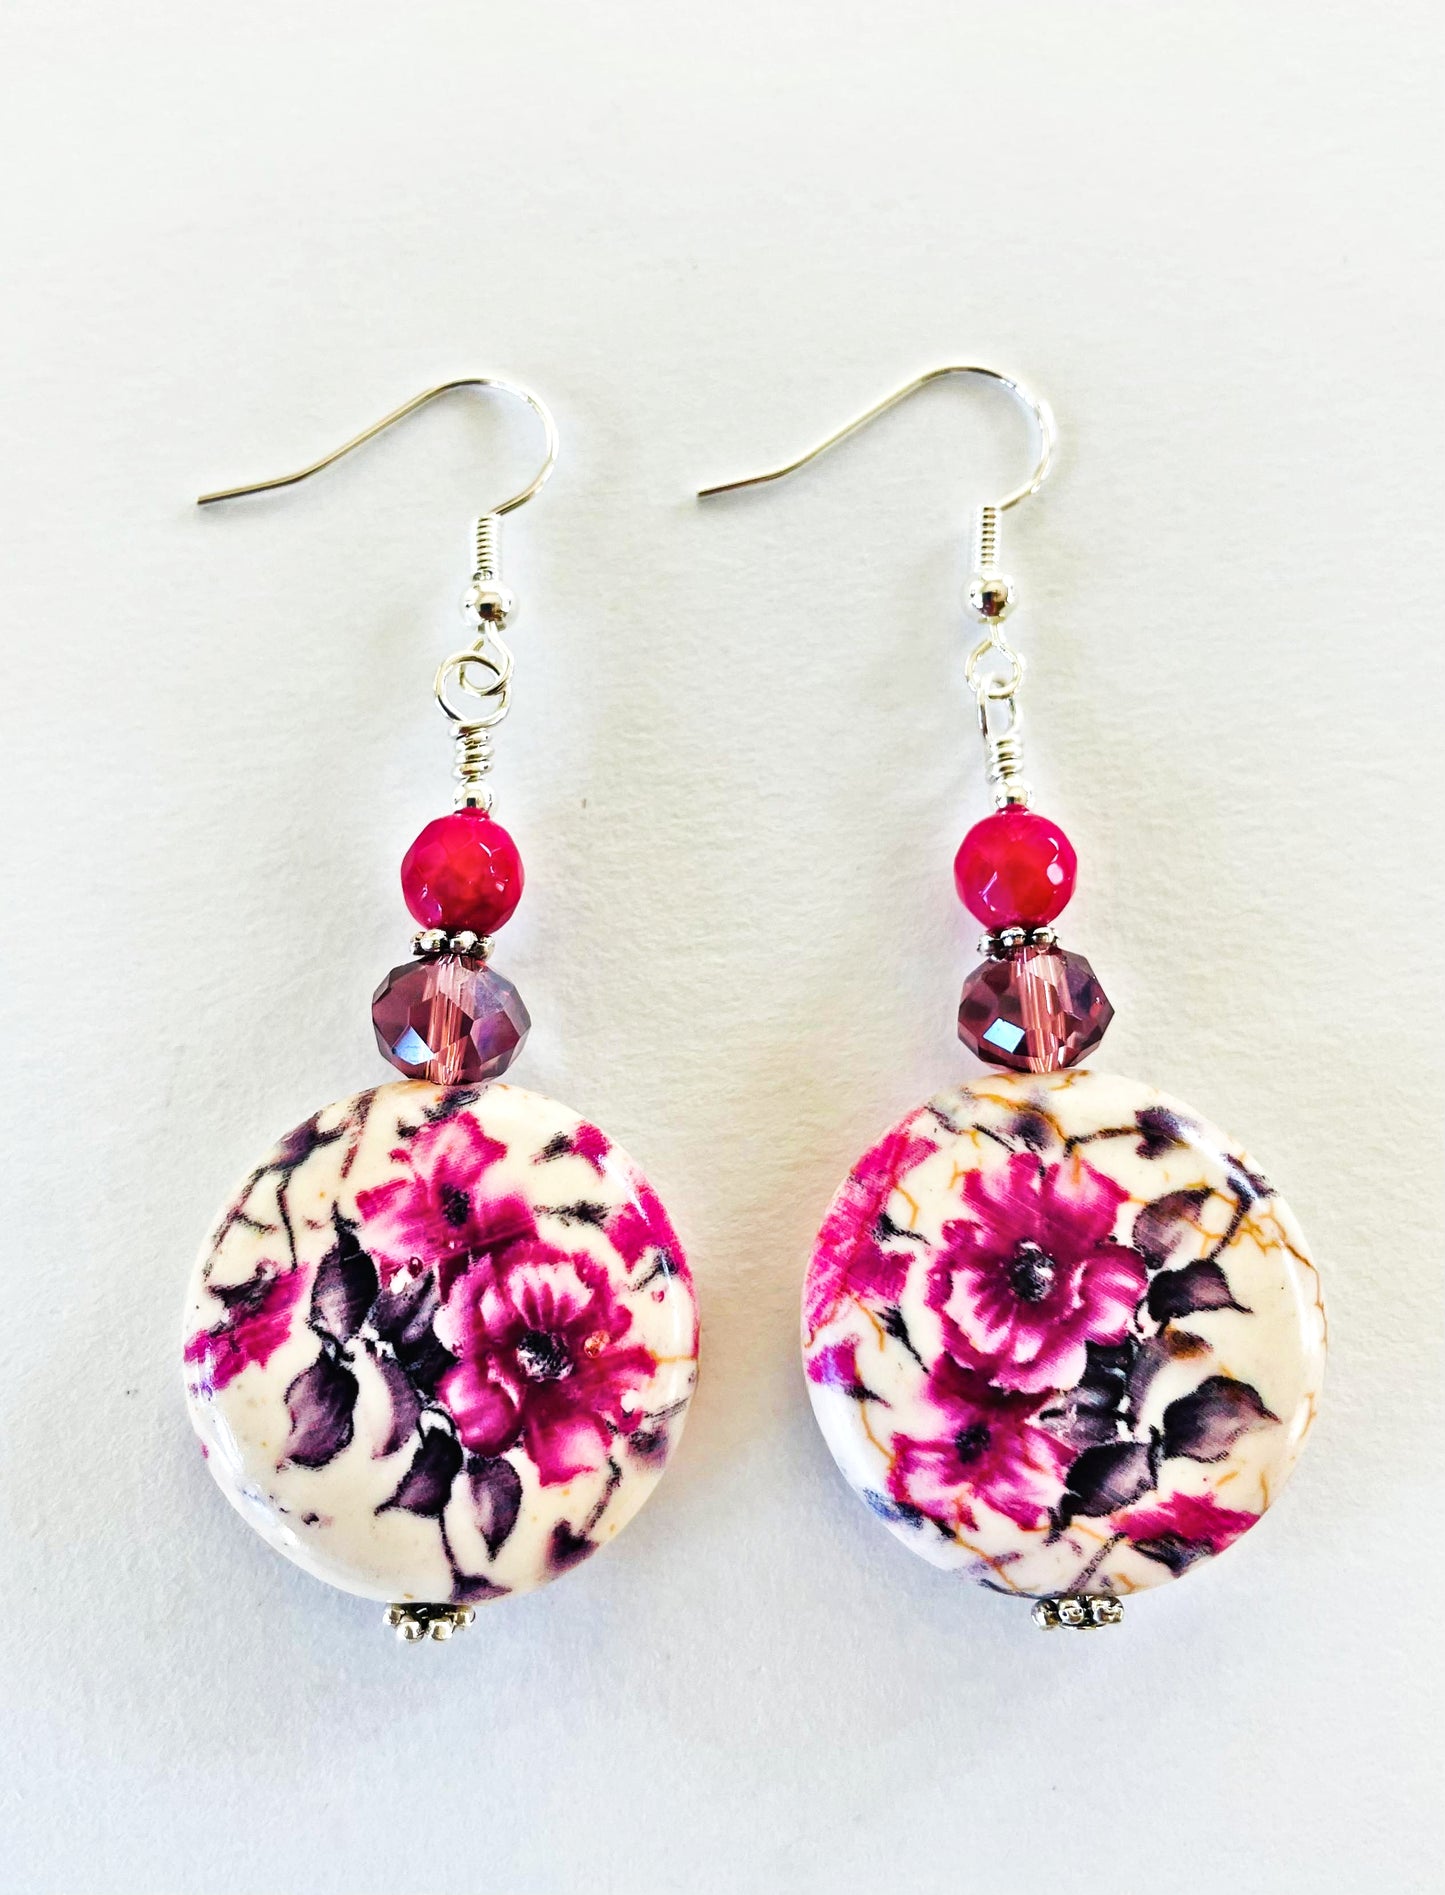 Focal flower earrings handcrafted by Linda